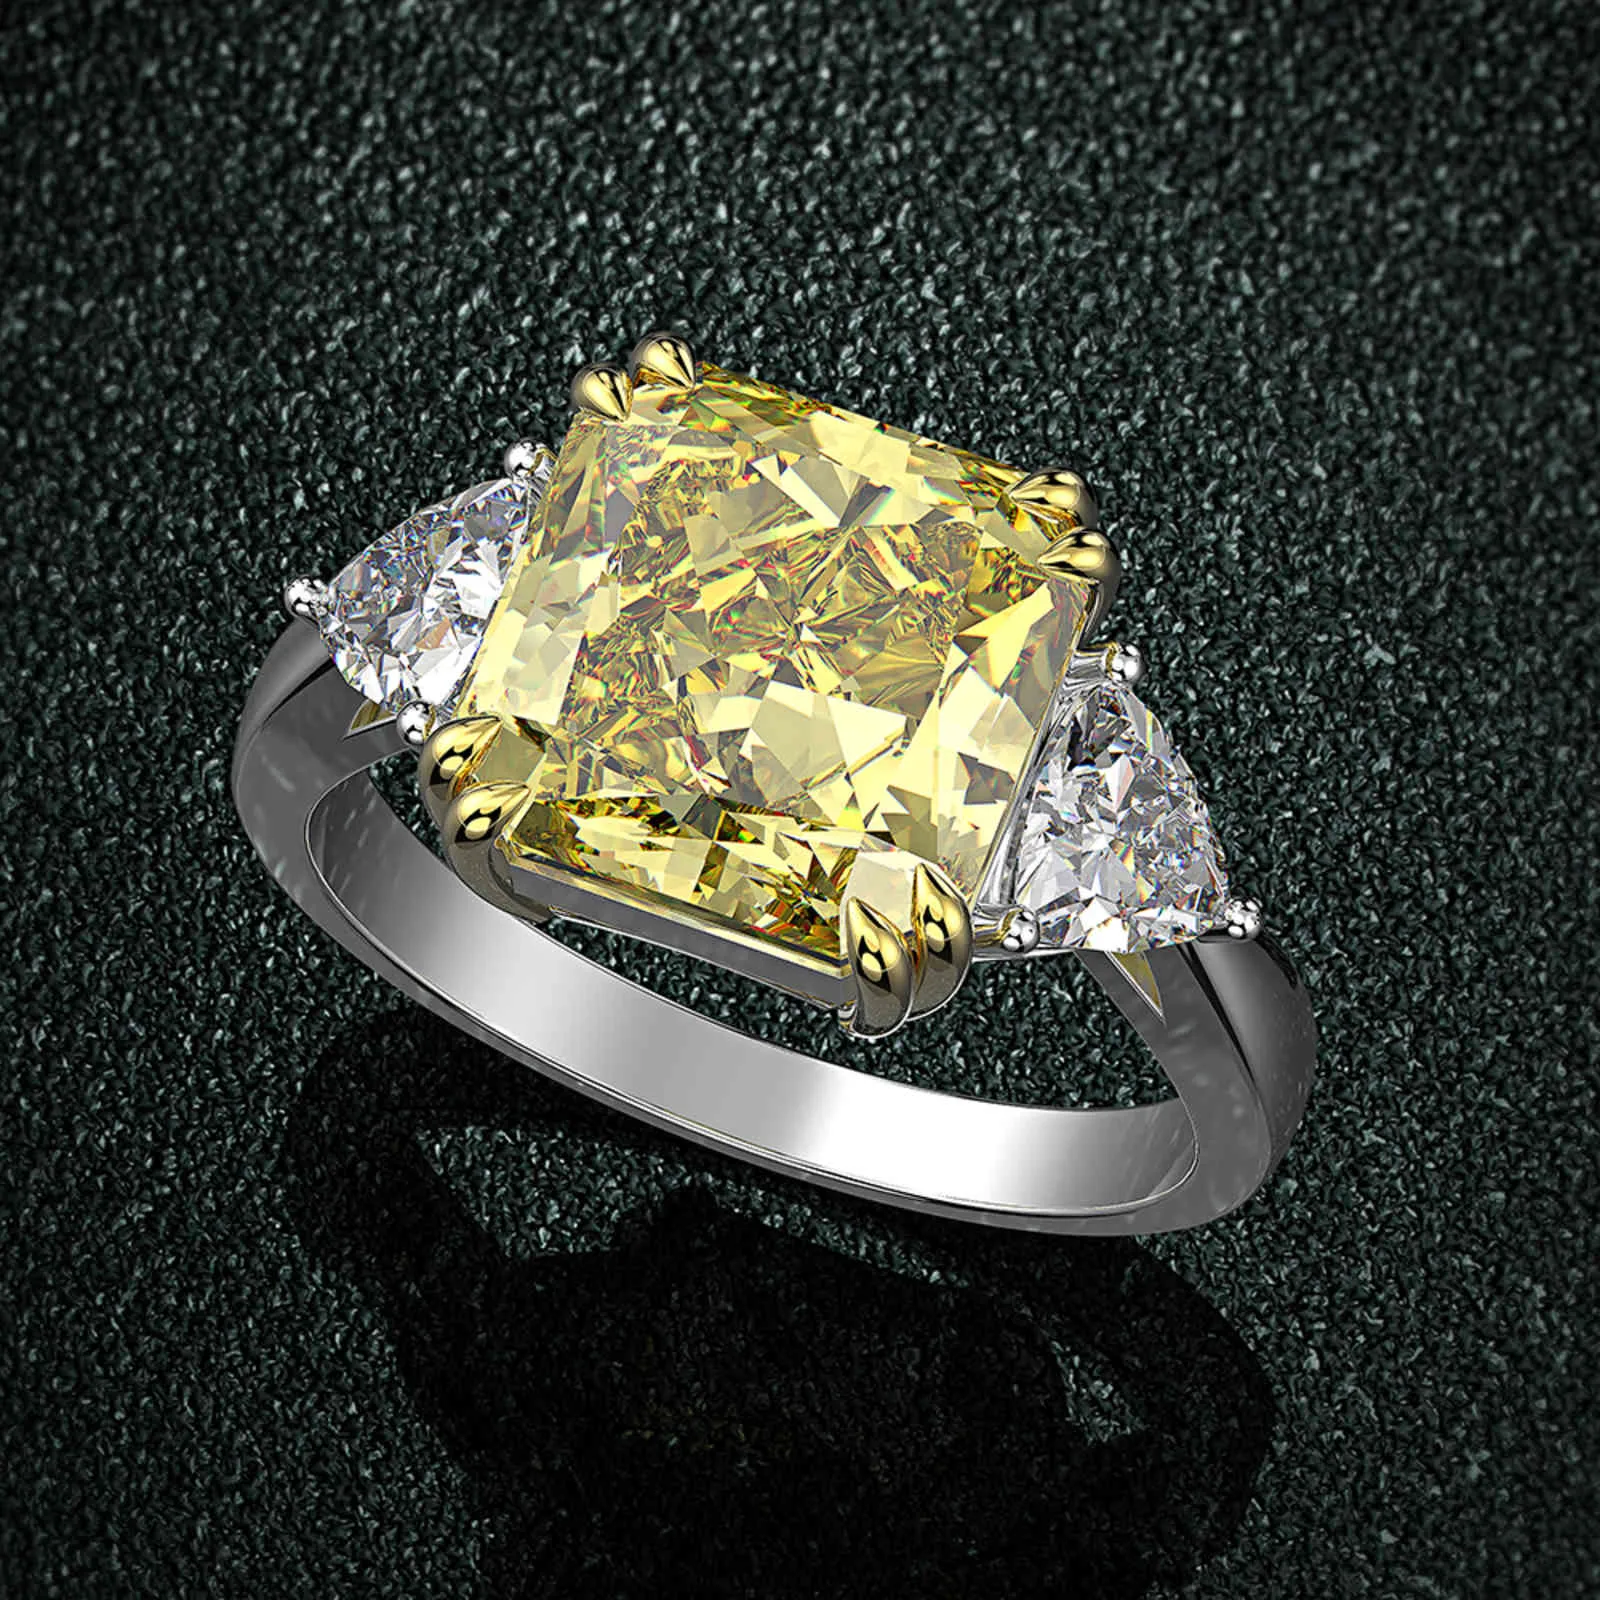 Wong Rain 100% 925 стерлингового серебра создал моисанит цитрин сапфировый драгоценный камень свадебное обручальное кольцо изысканные украшения оптом